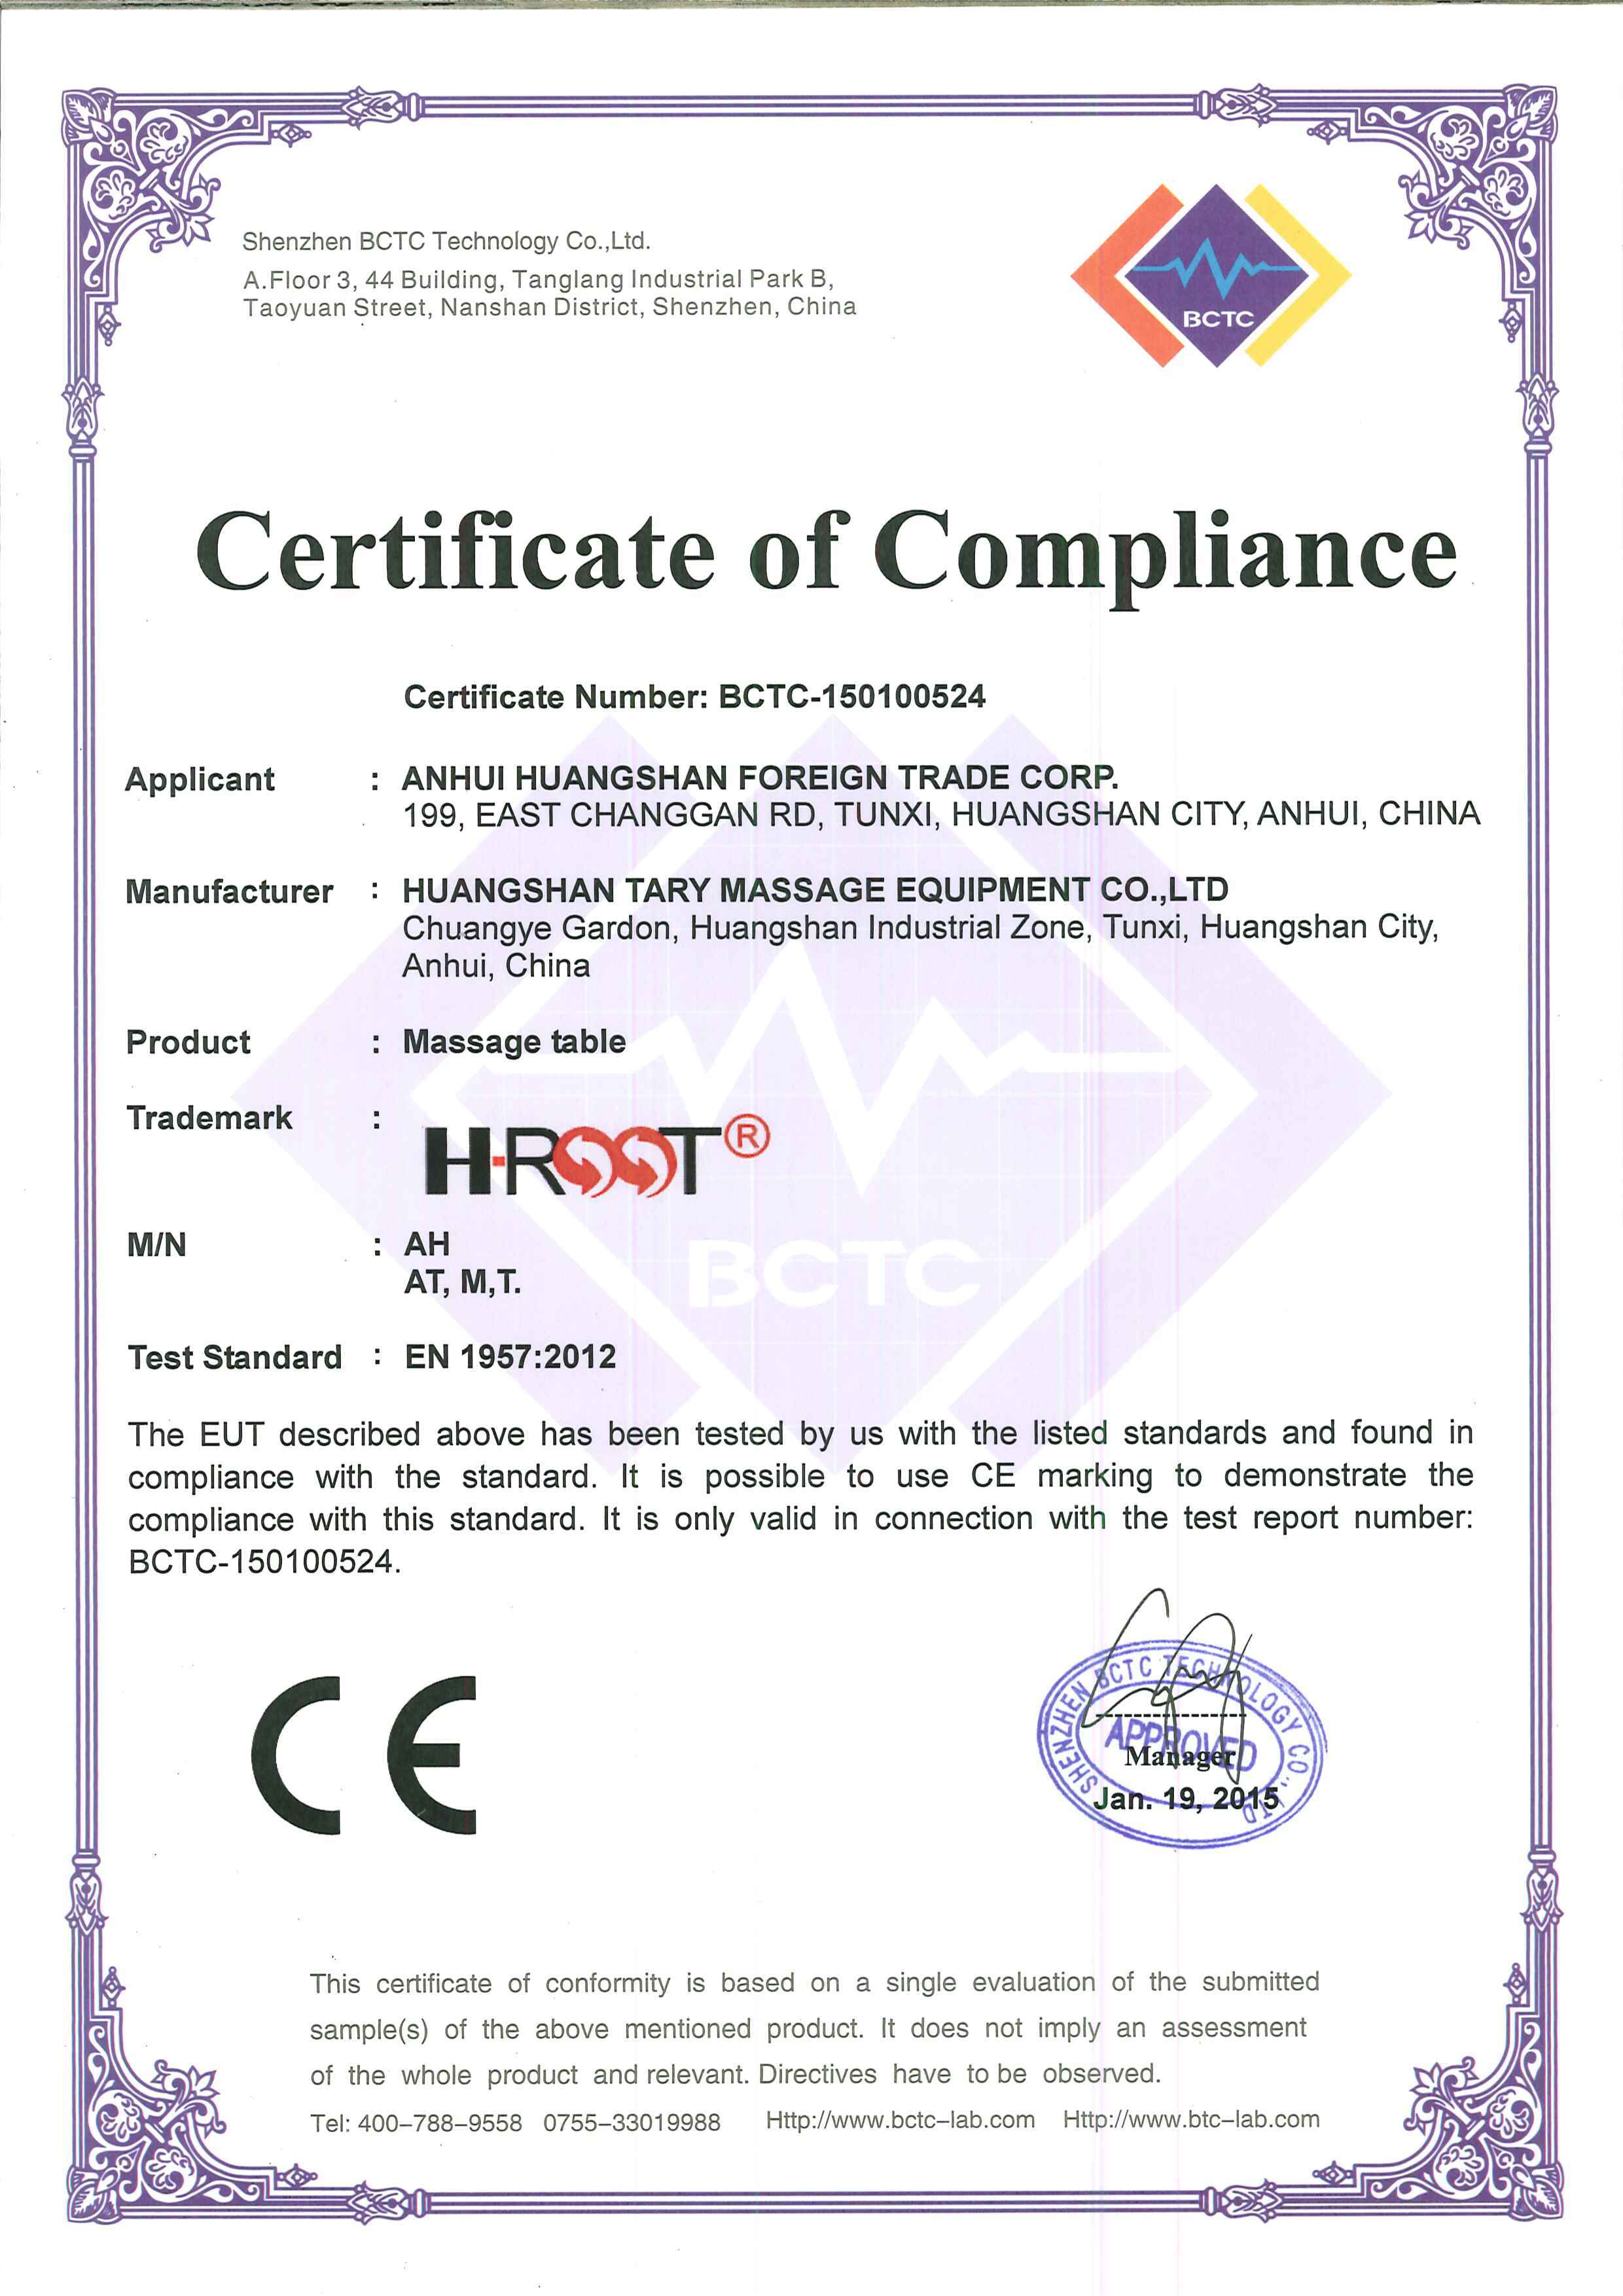 Fresh CE certificate made in 2015